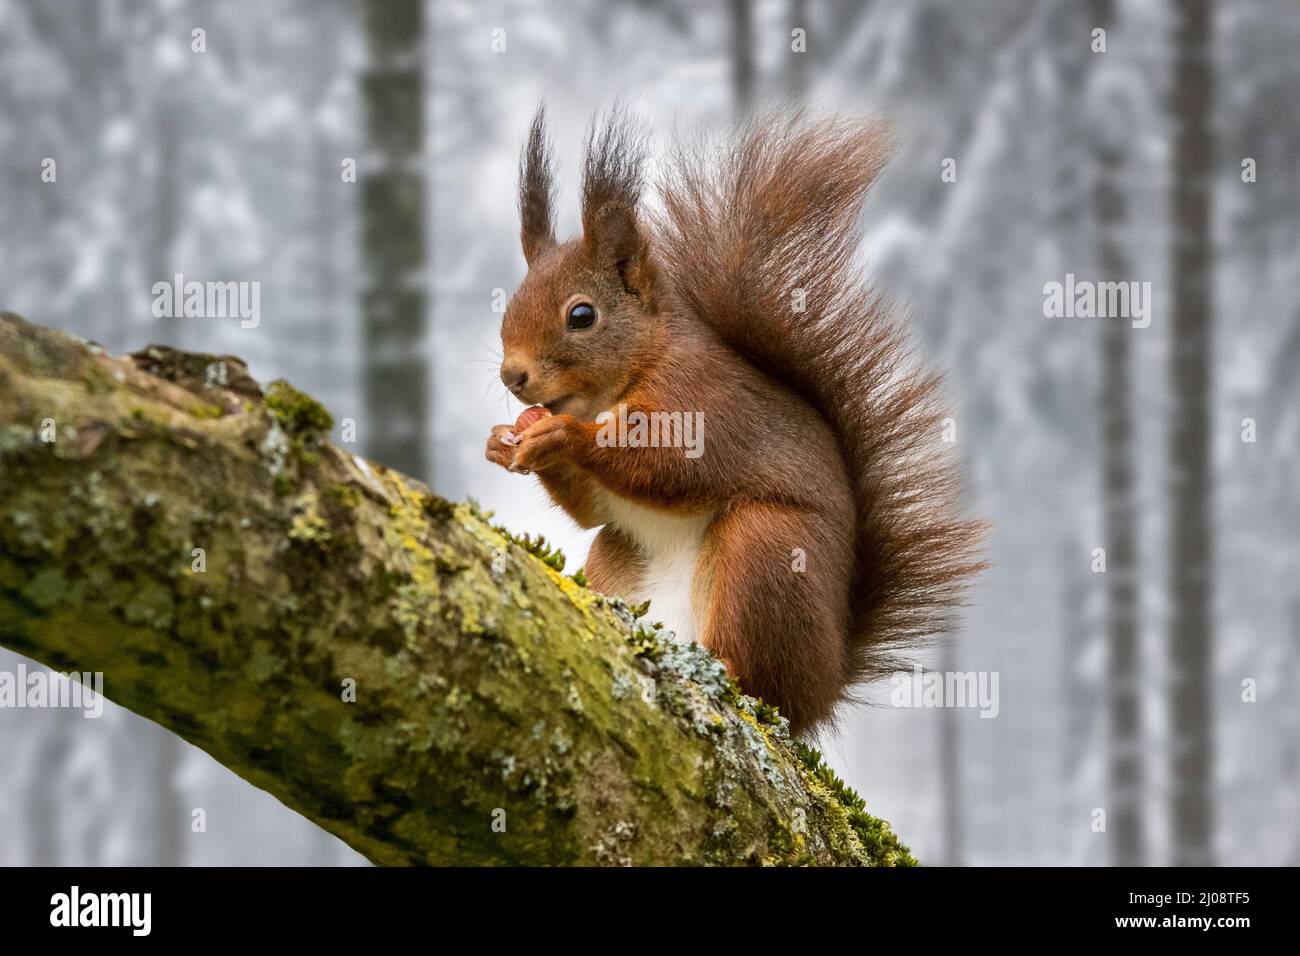 Écureuil rouge eurasien (Sciurus vulgaris) avec de grands touffes d'oreille sur la branche d'arbre manger noisette / noix de cache alimentaire dans la forêt couverte de neige en hiver Banque D'Images